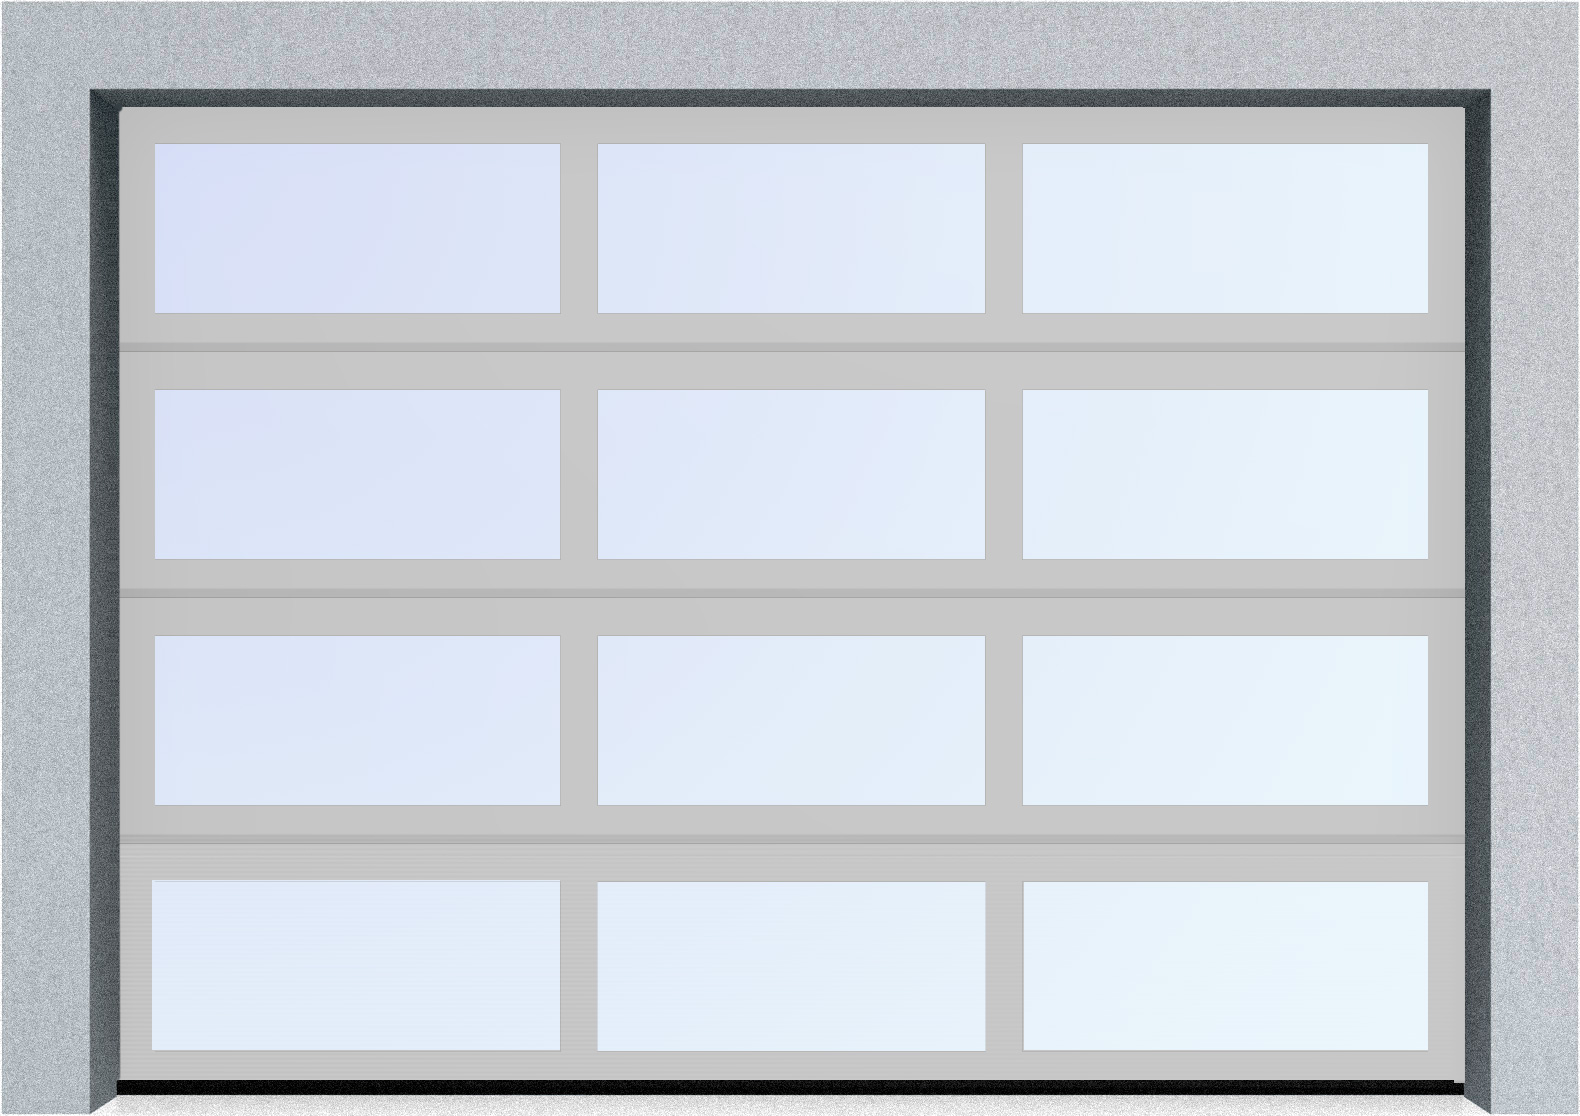  Секционные панорамные ворота серии AluTrend (АЛП) 2125х2250 нижняя панель стандартные цвета, фото 8 